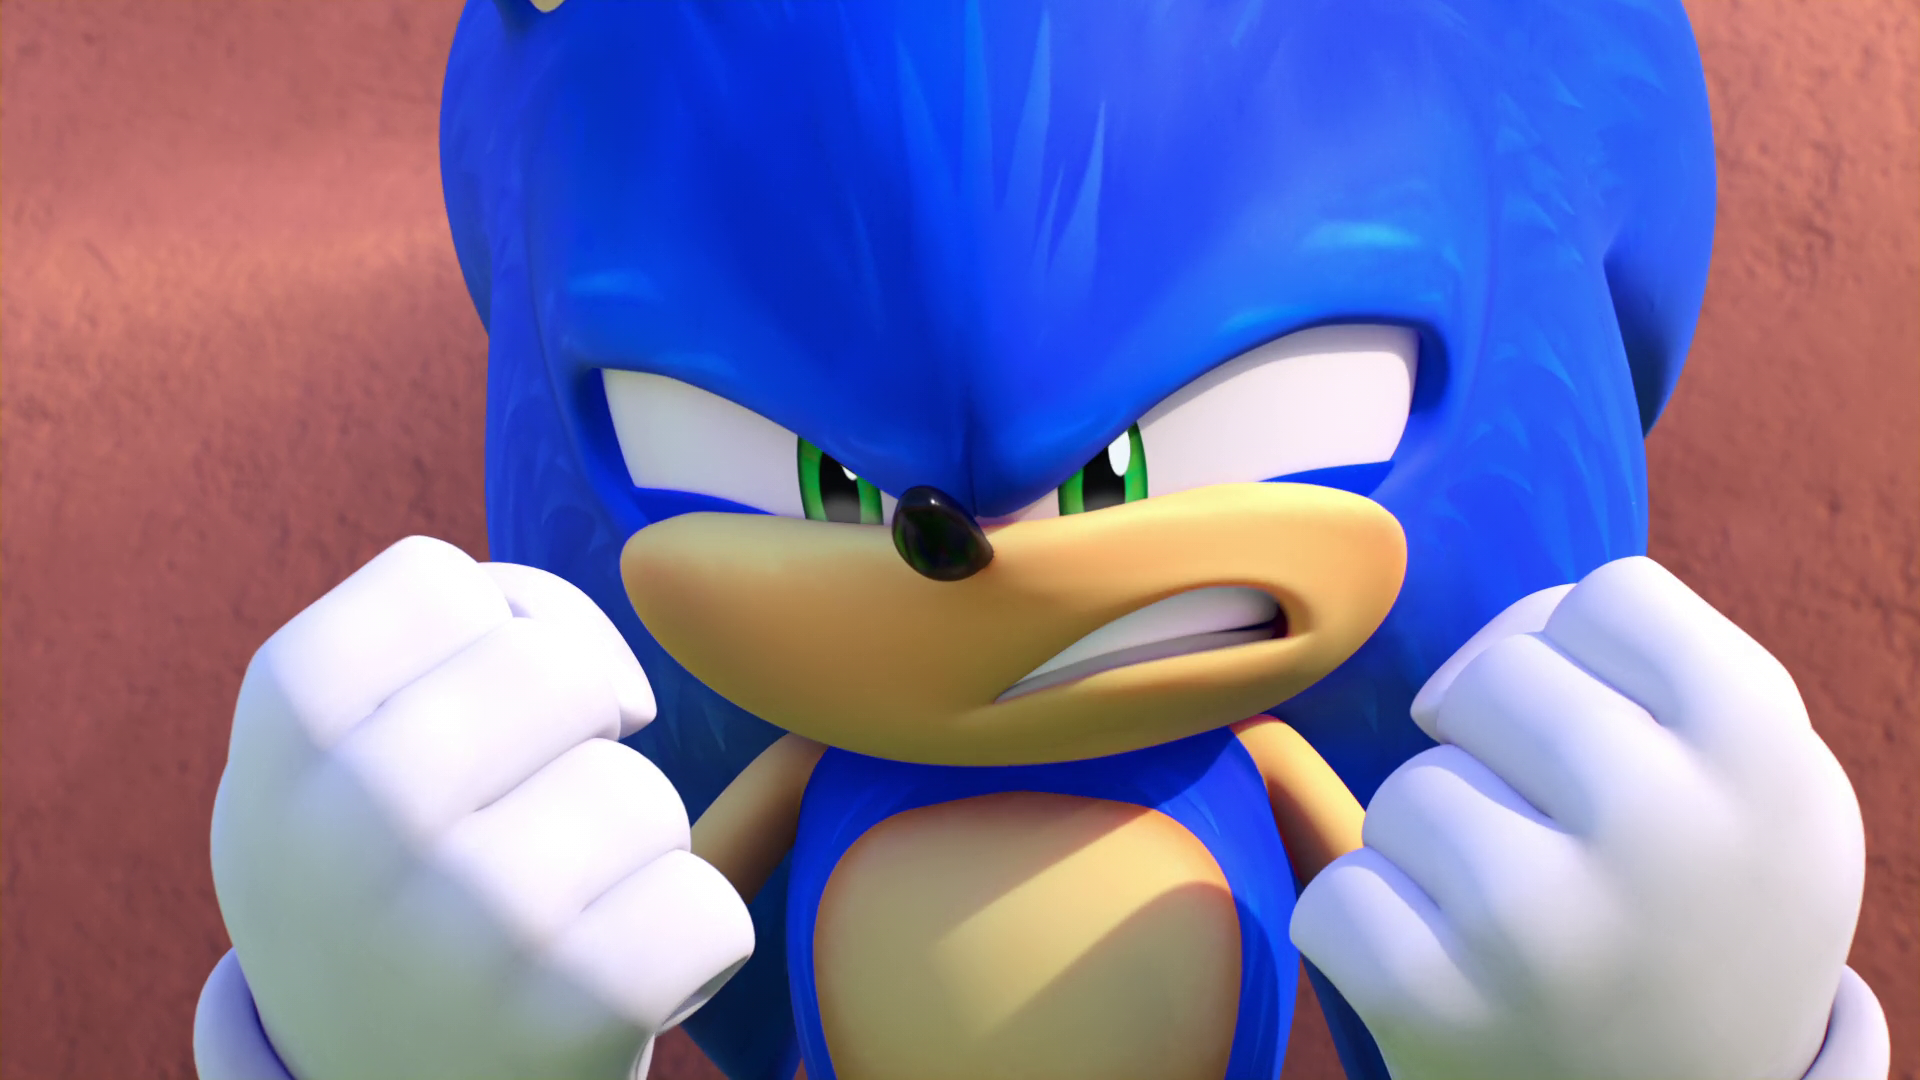 Sonic the Hedgehog 2020-Sonic 6 by GiuseppeDiRosso on DeviantArt